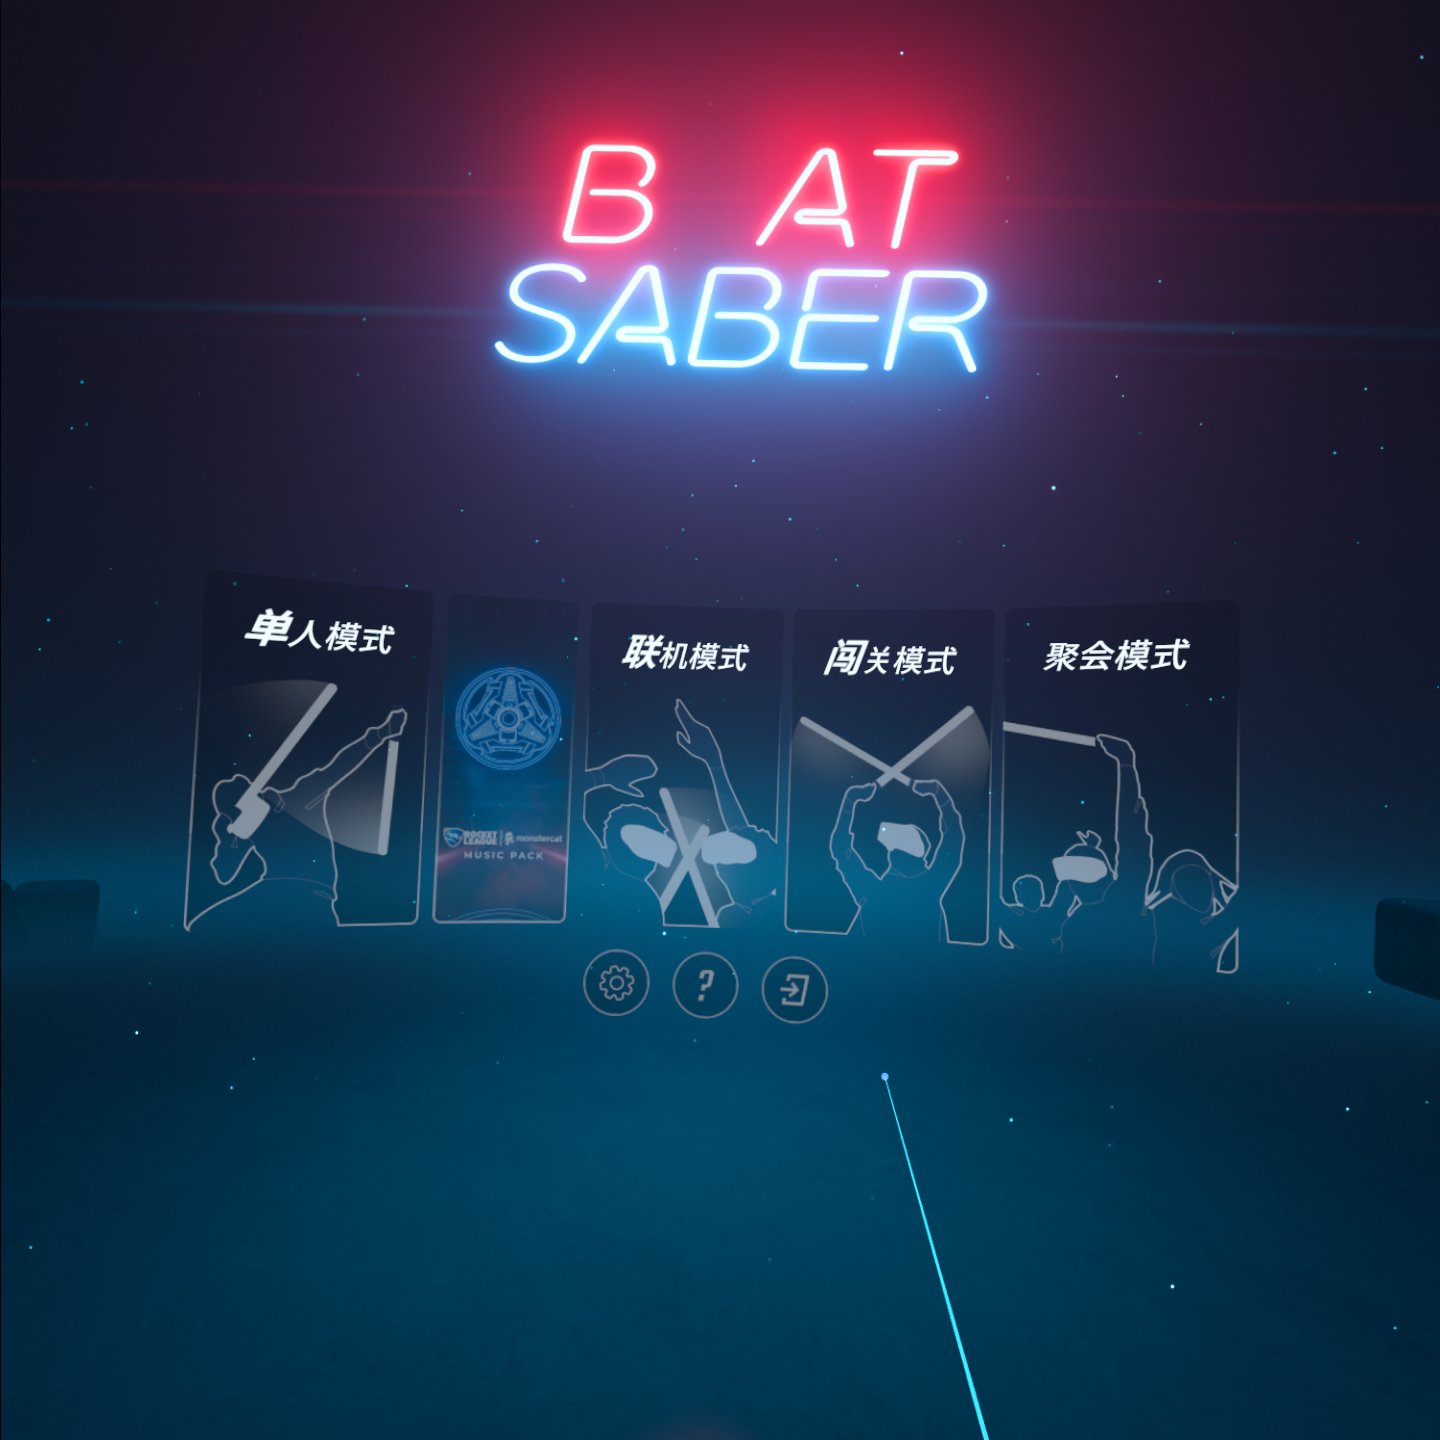 《光剑节奏BMBF整合完美一千首歌曲版本》Beat Saber 一体机中文歌曲汉化打包